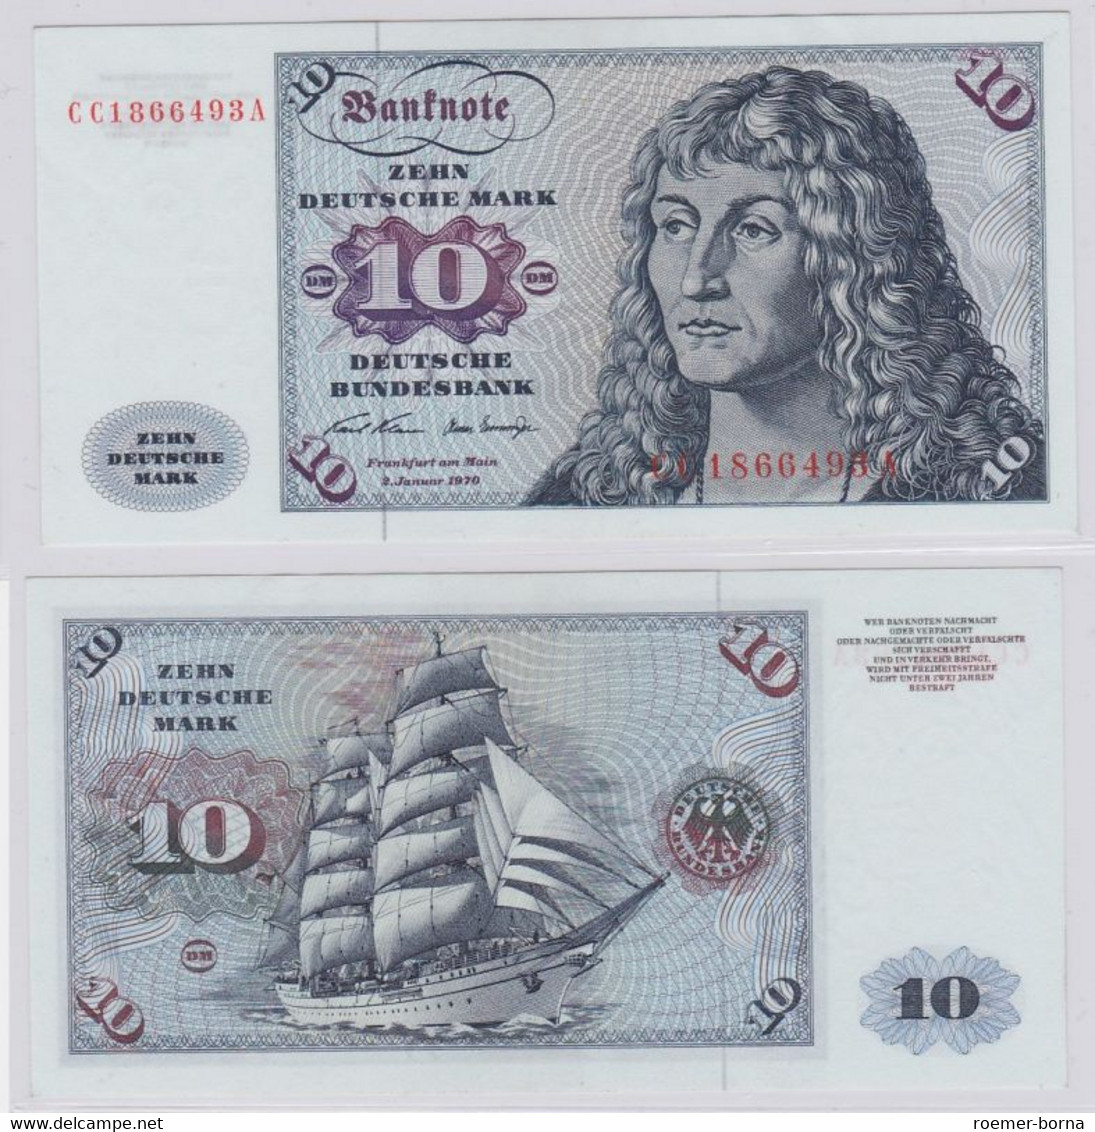 T146484 Banknote 10 DM Deutsche Mark Ro. 270a Schein 2.Jan. 1970 KN CC 1866493 A - 10 DM